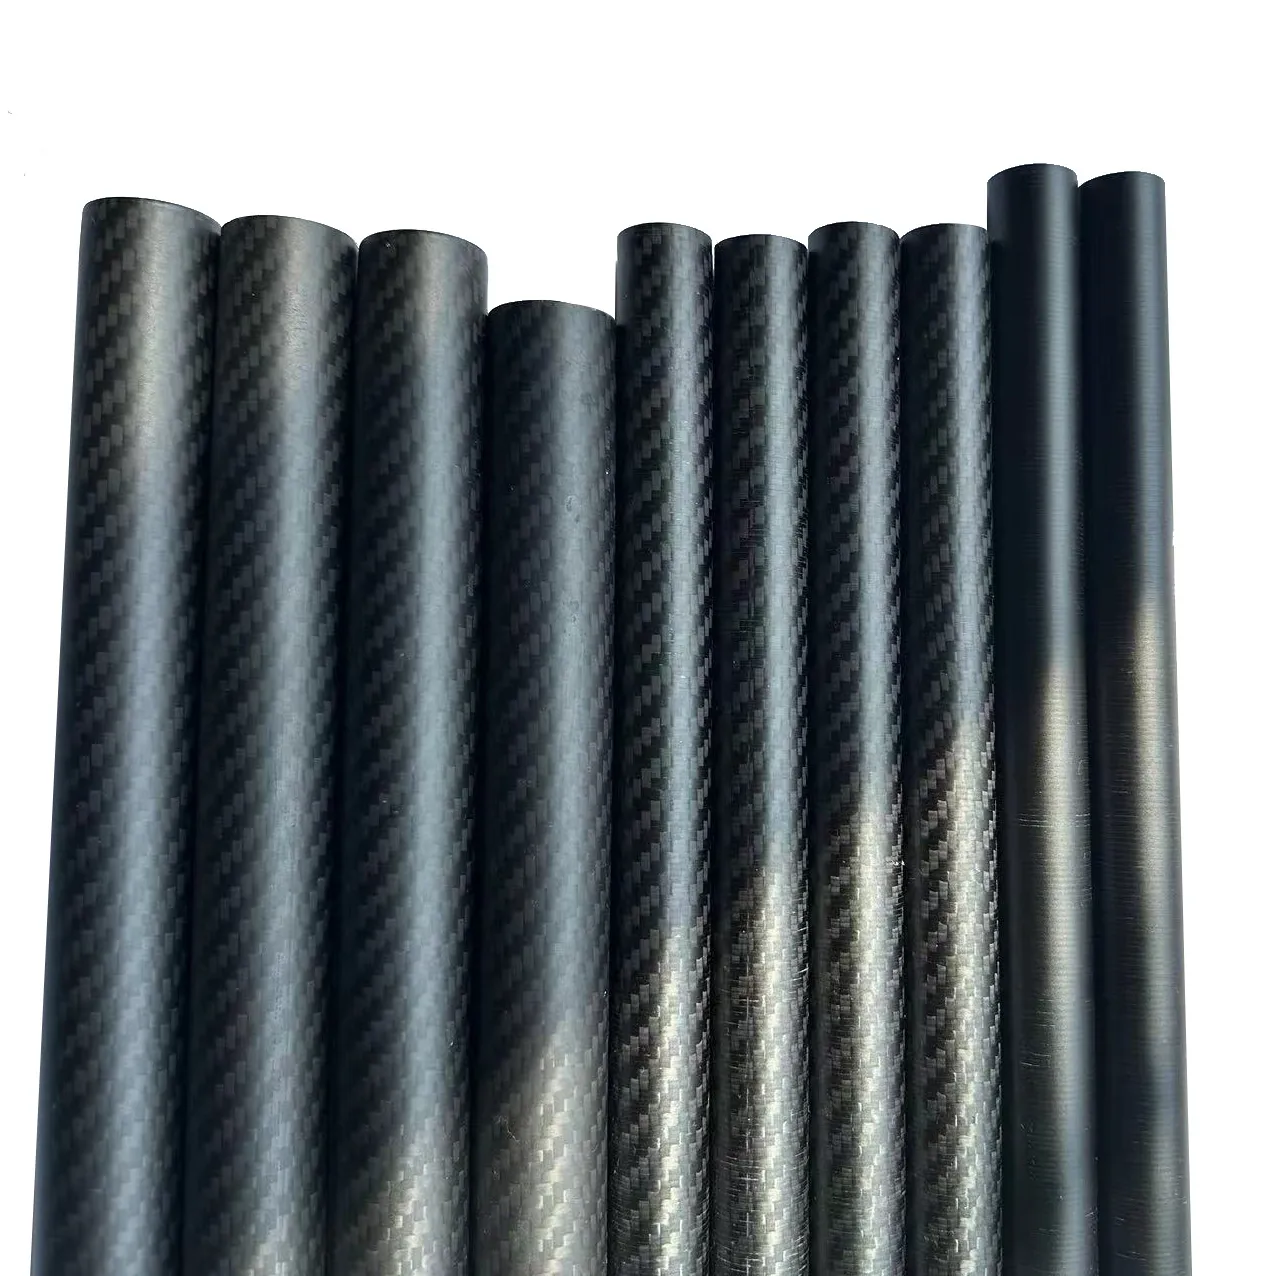 Vente directe d'usine tube de taille personnalisée en fibre de carbone